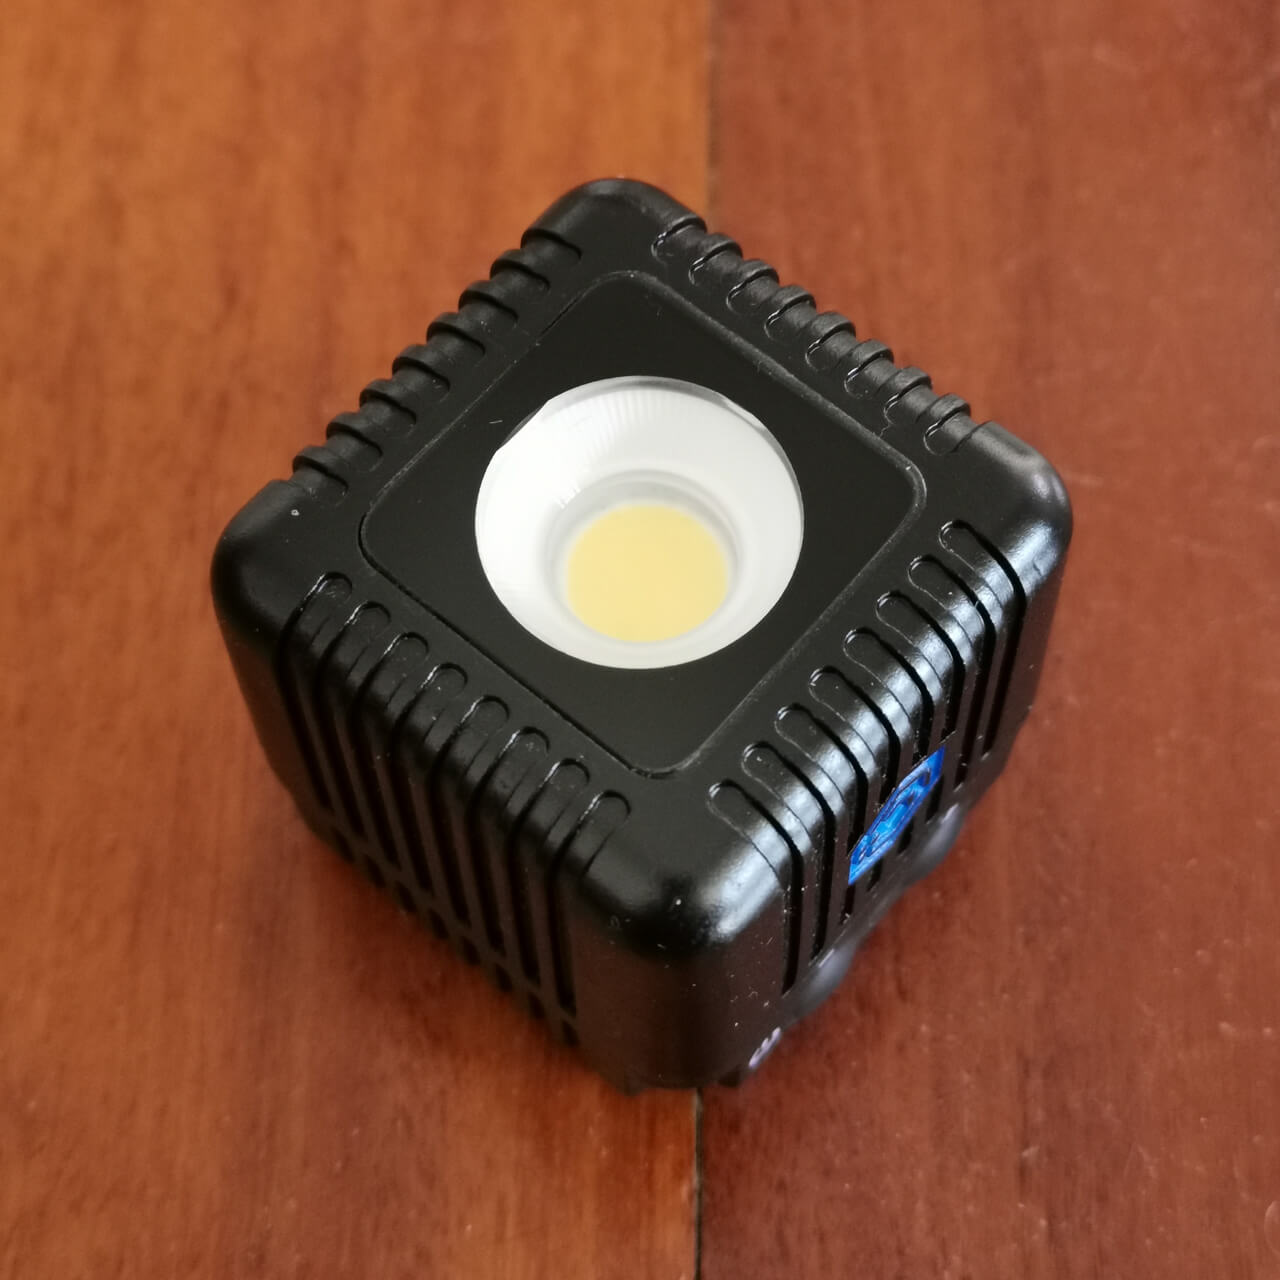 The LumeCube 2.0 has a round COB LED emitter